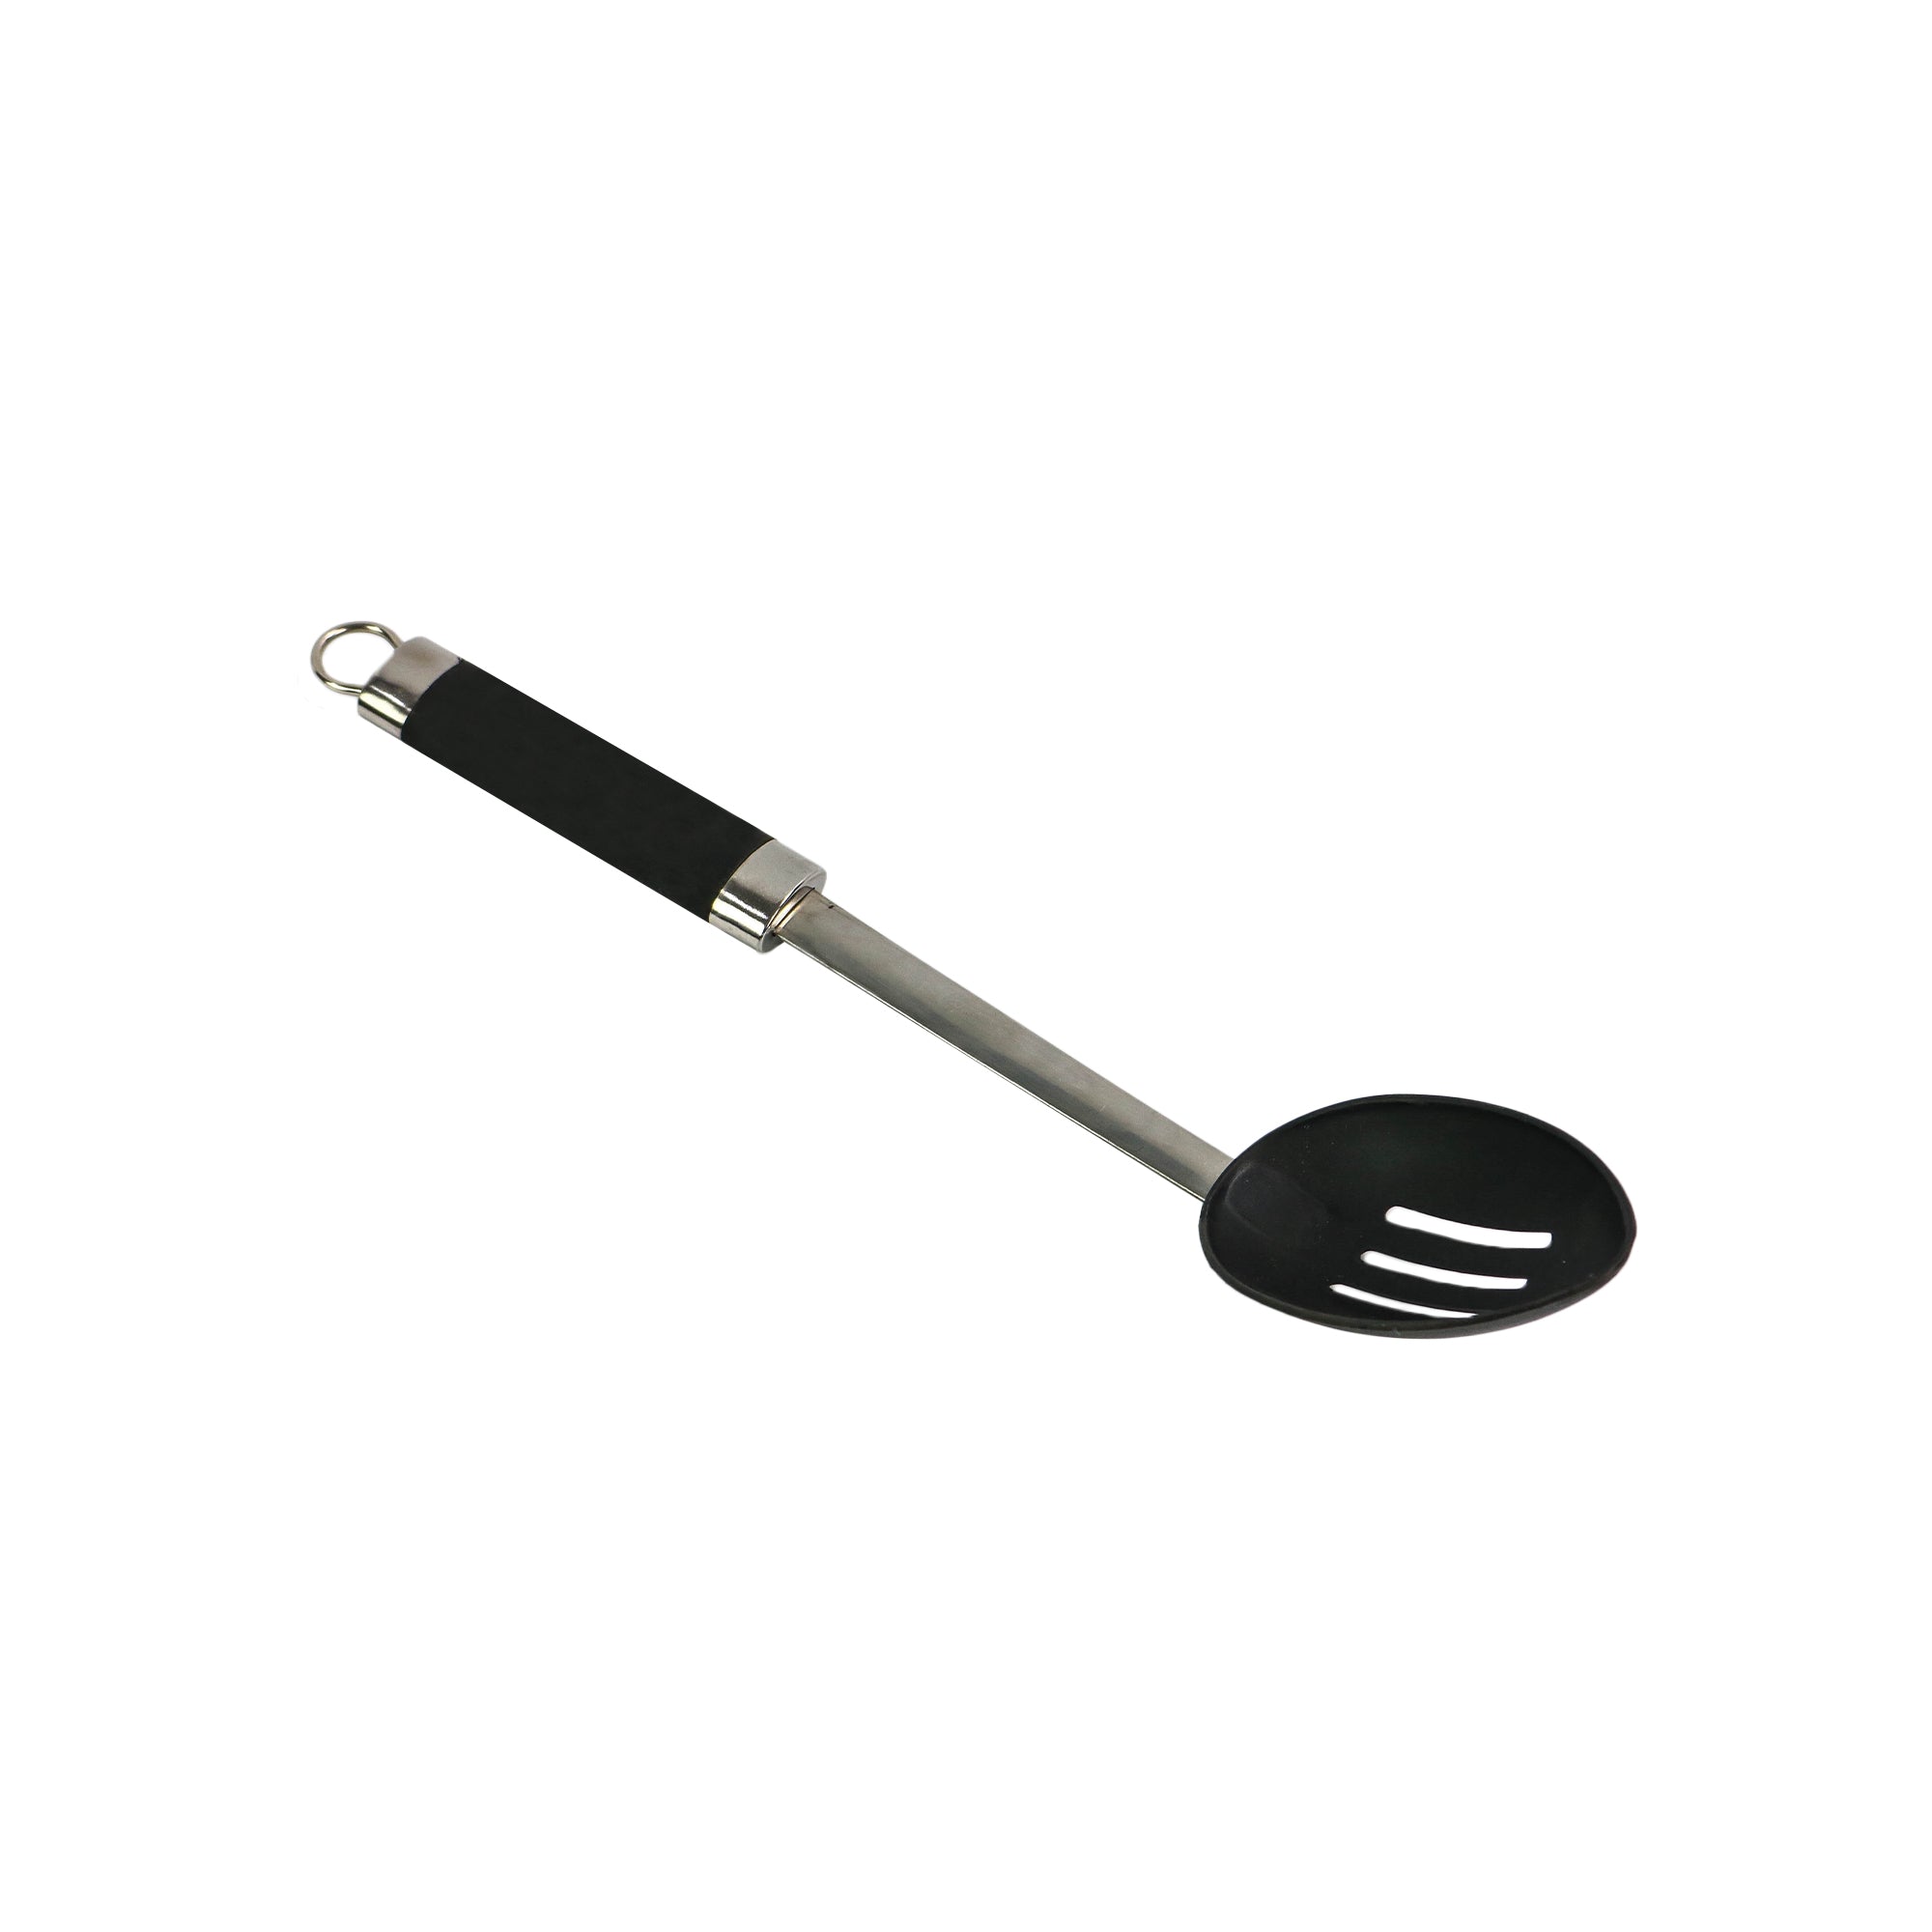 Plastic Slotted Spoon 2mm SLT50577